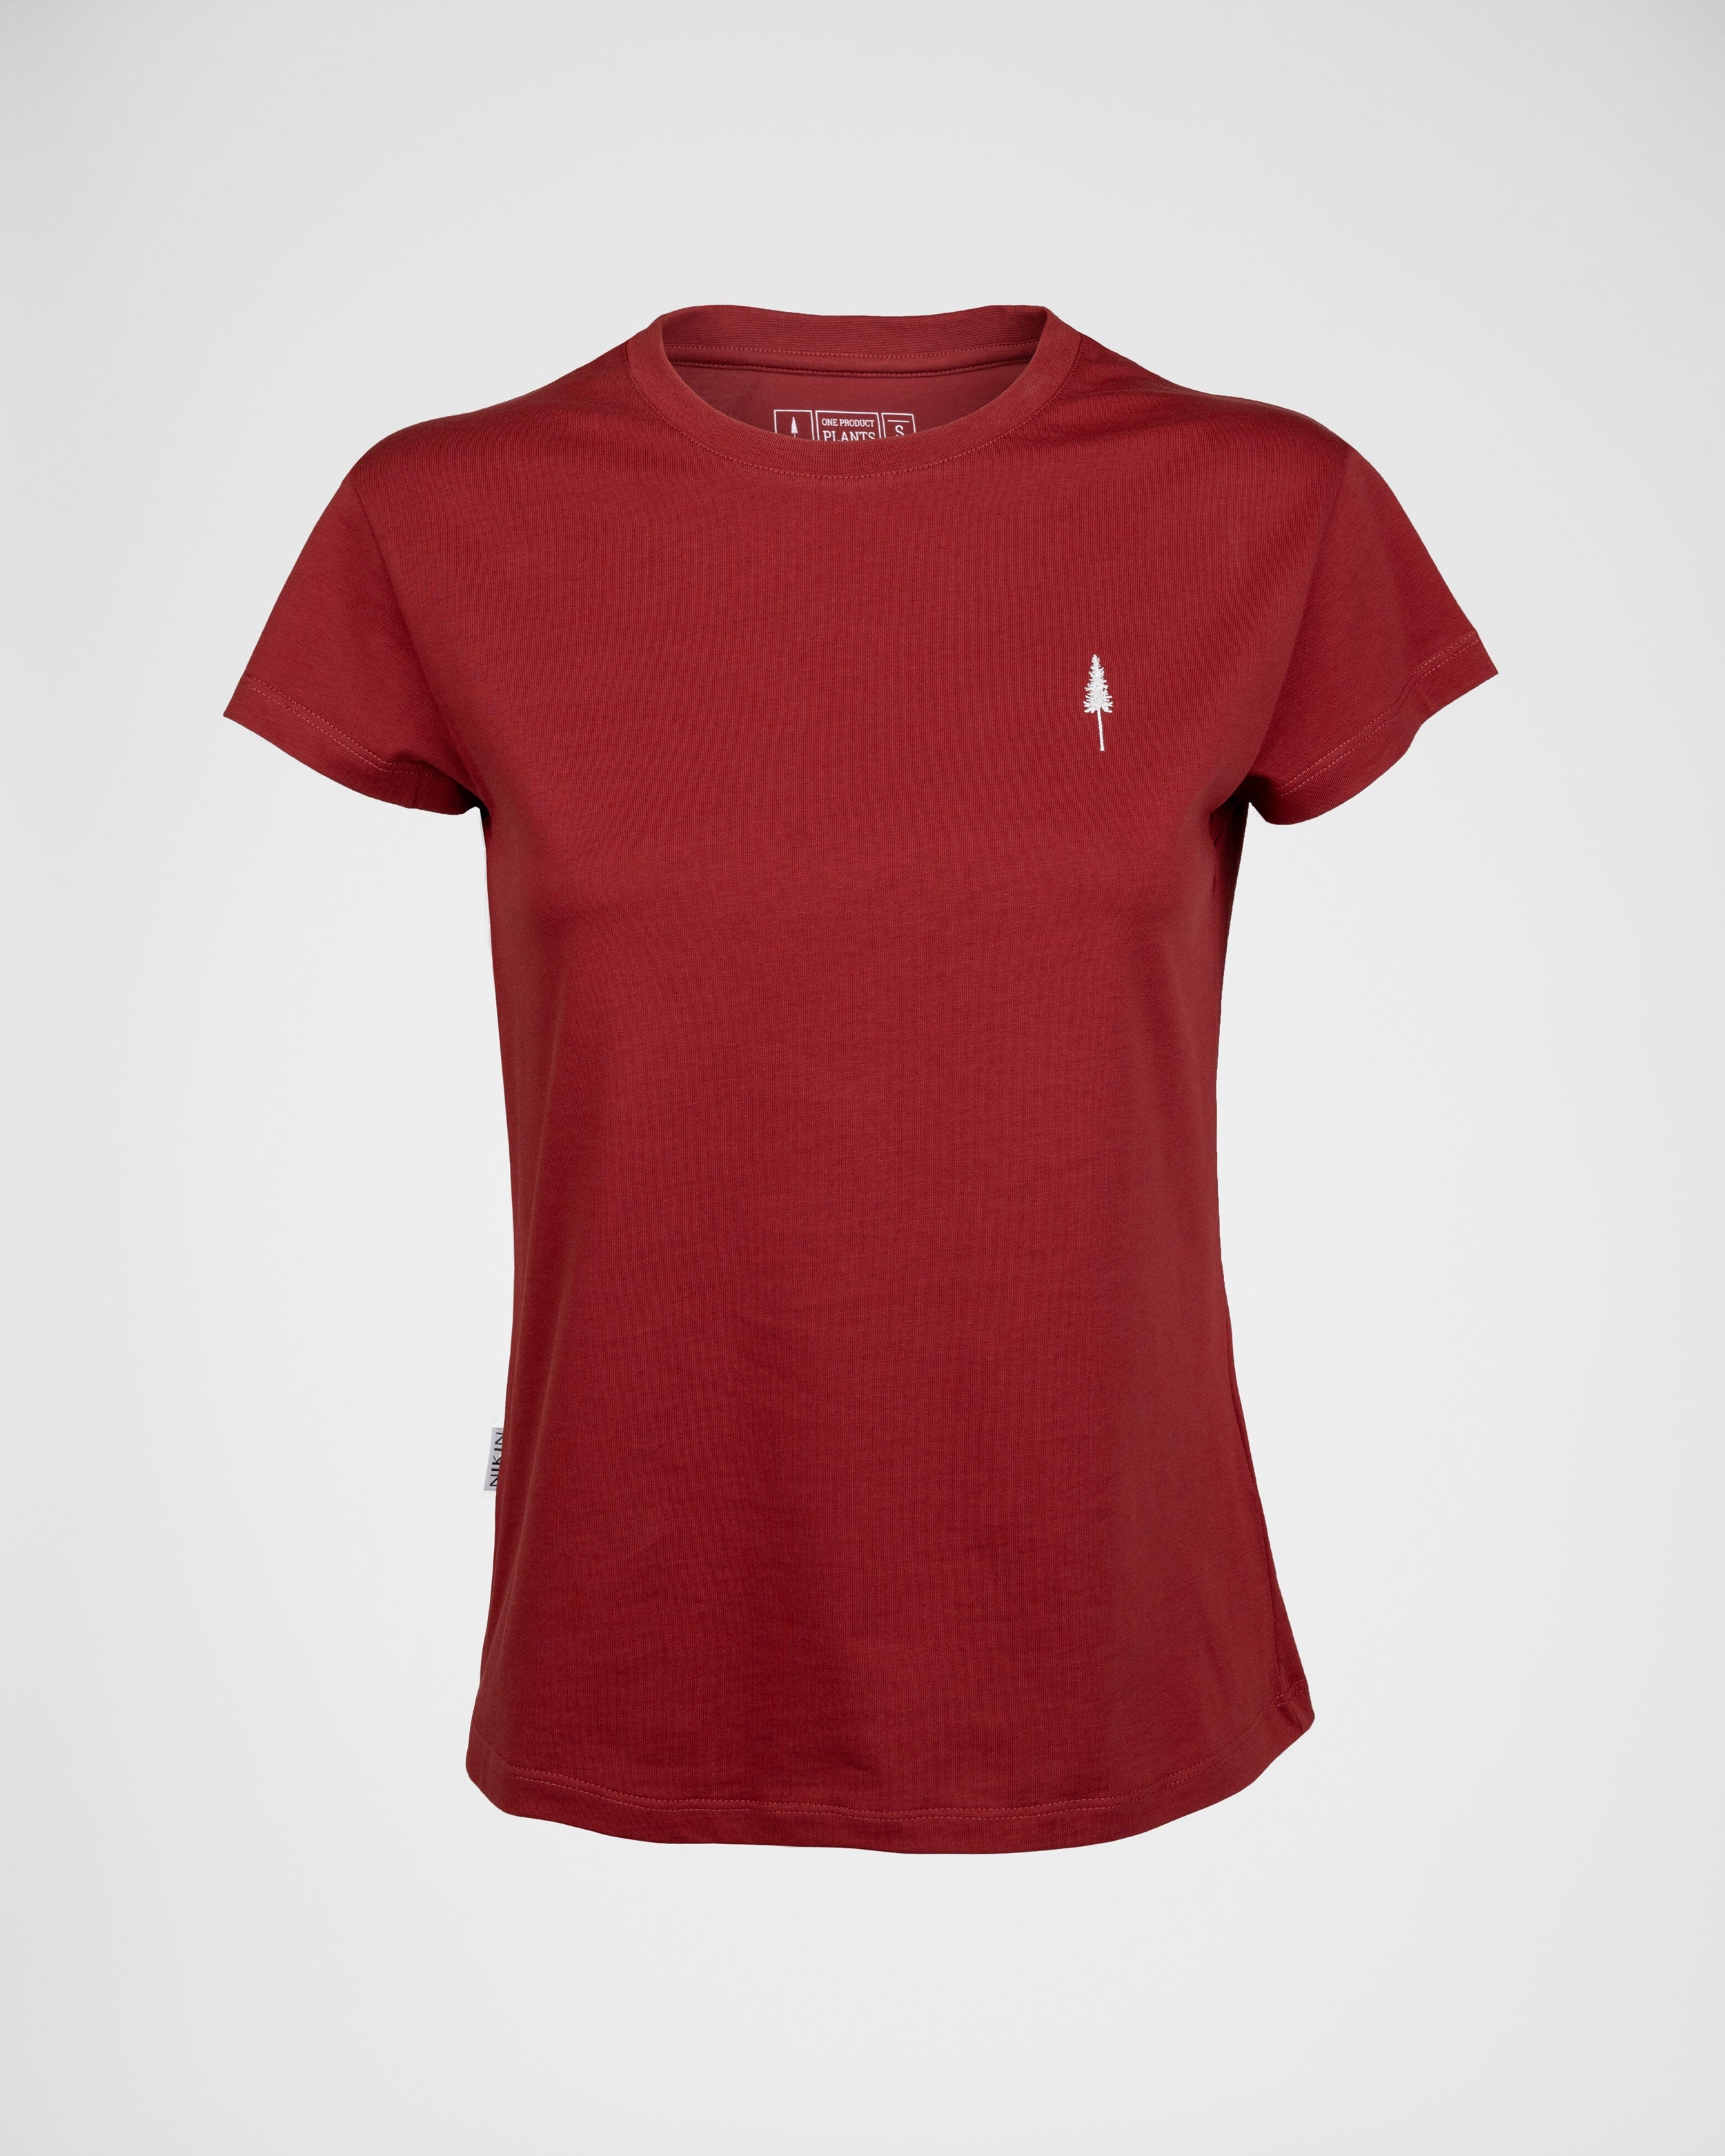 Women's organic cotton T-shirt Treeshirt Red